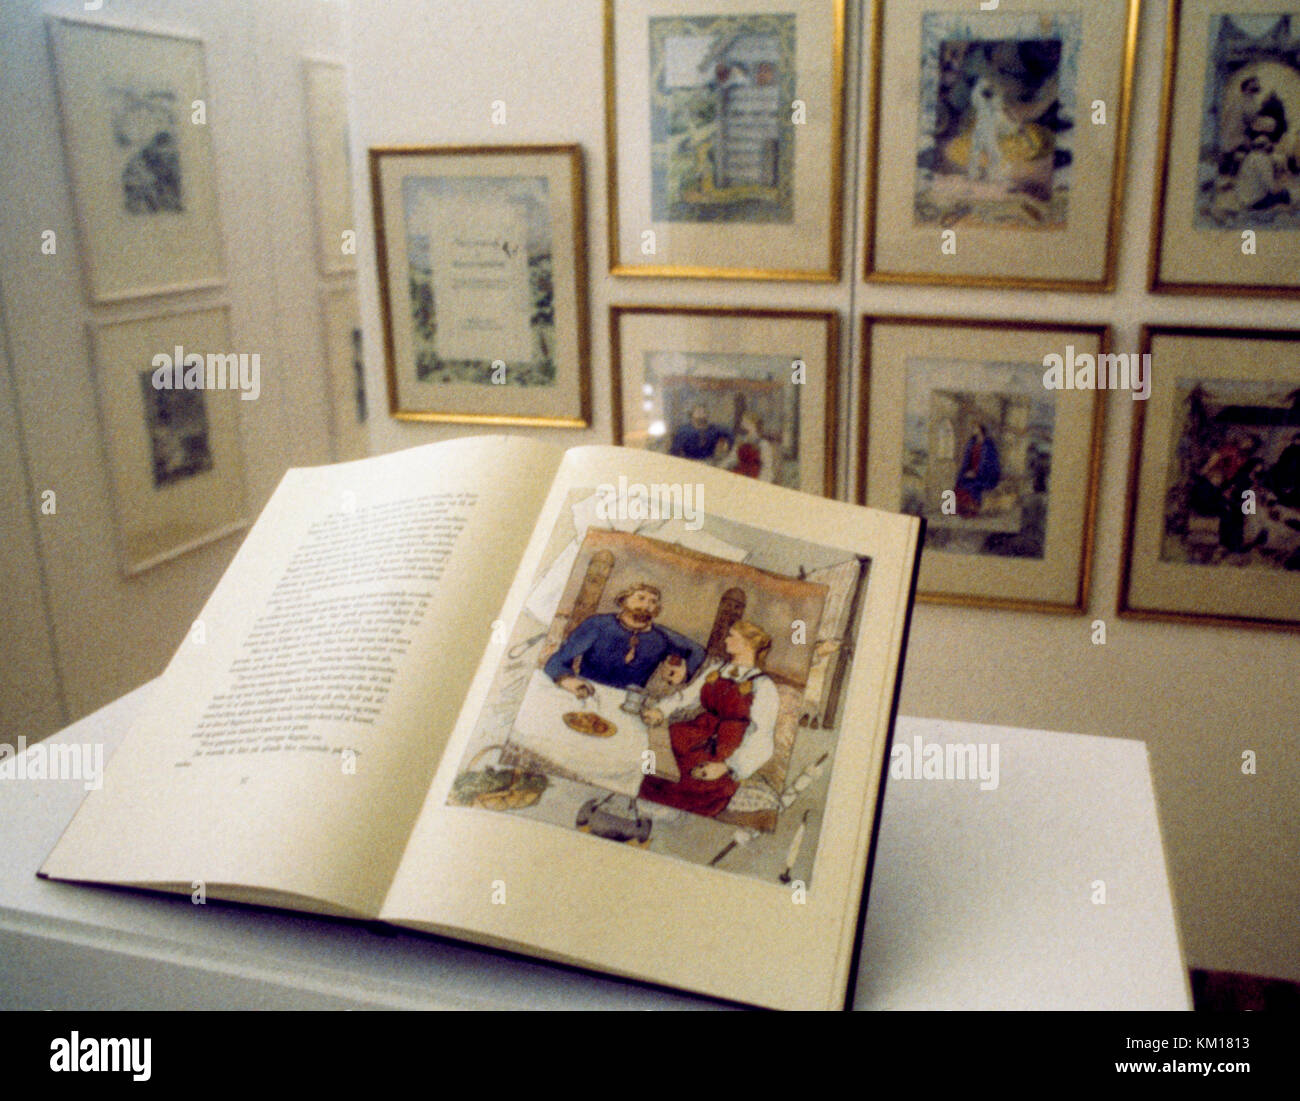 Margrethe II de Dinamarca es accomplieshed en dibujo y pintura y ha ilustrado libros 1989 Foto de stock